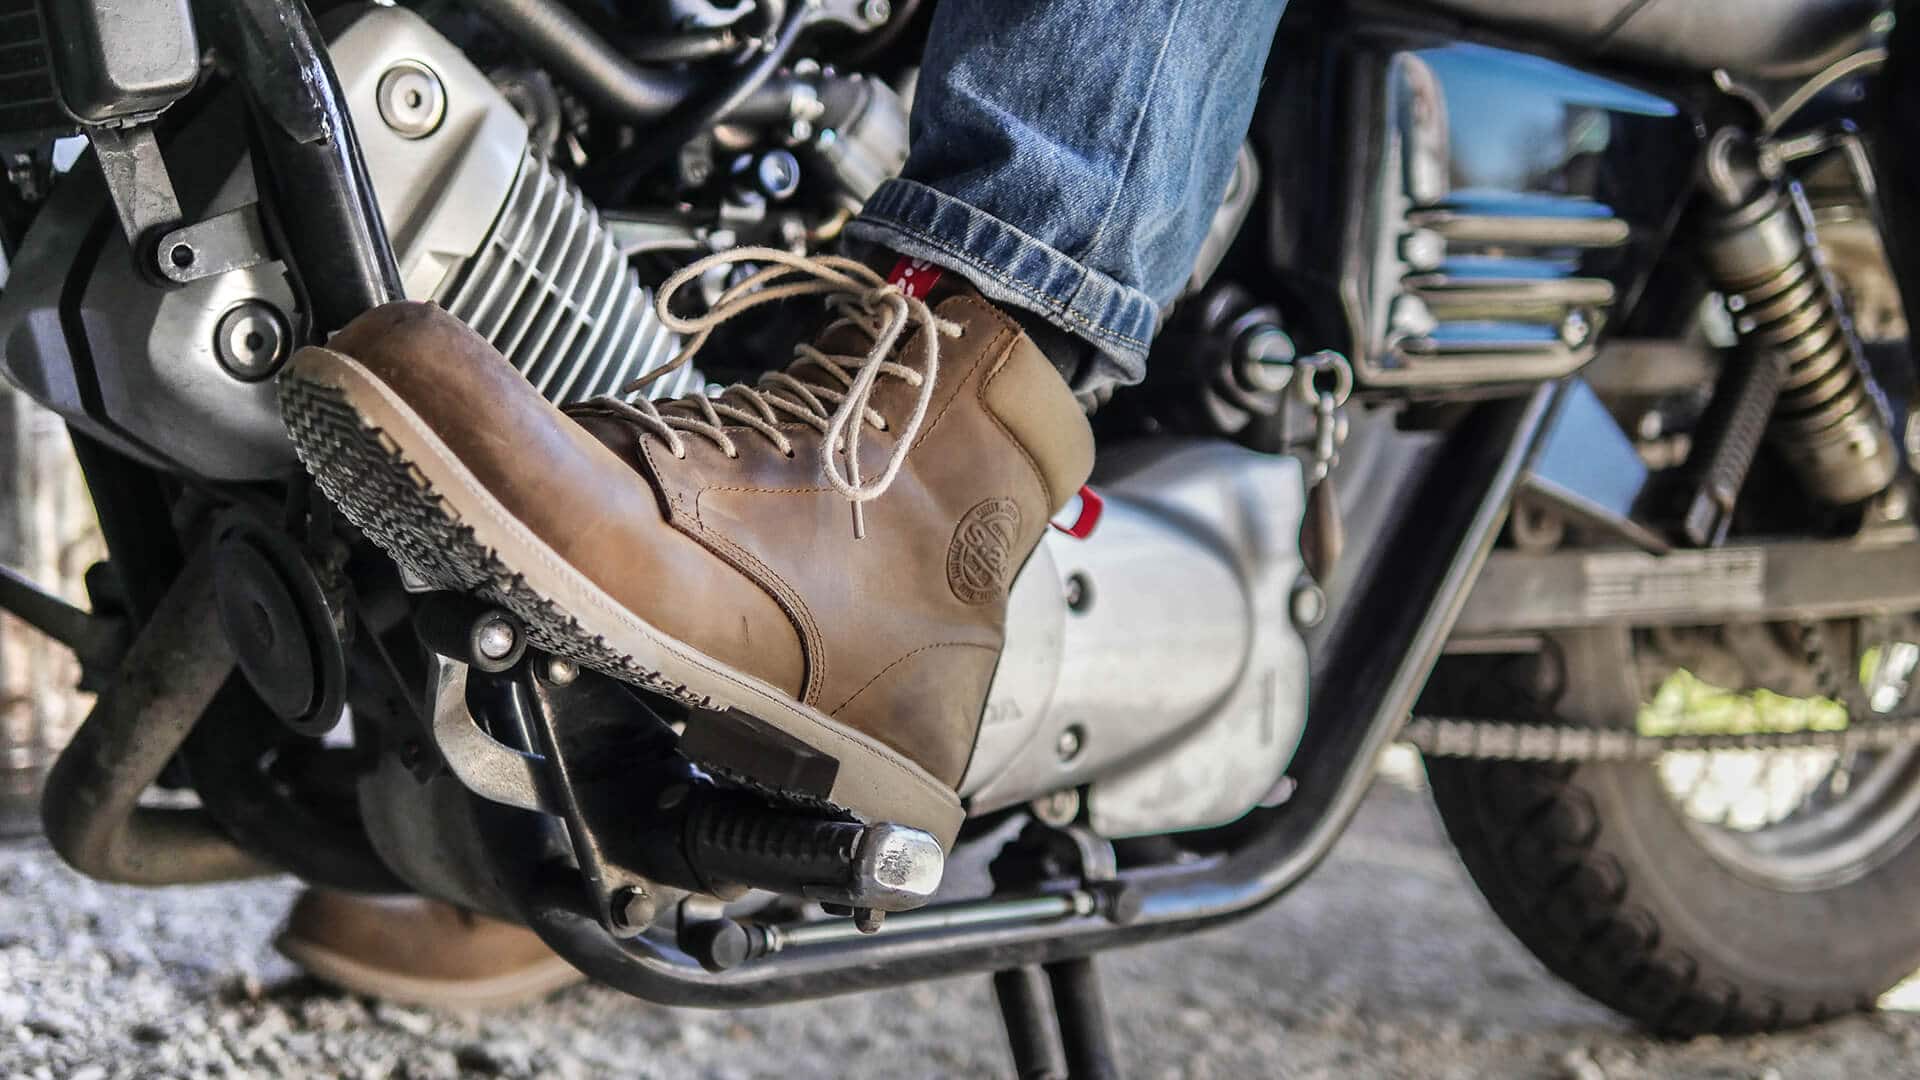 chaussure marron en cuir d'une personne sur une moto